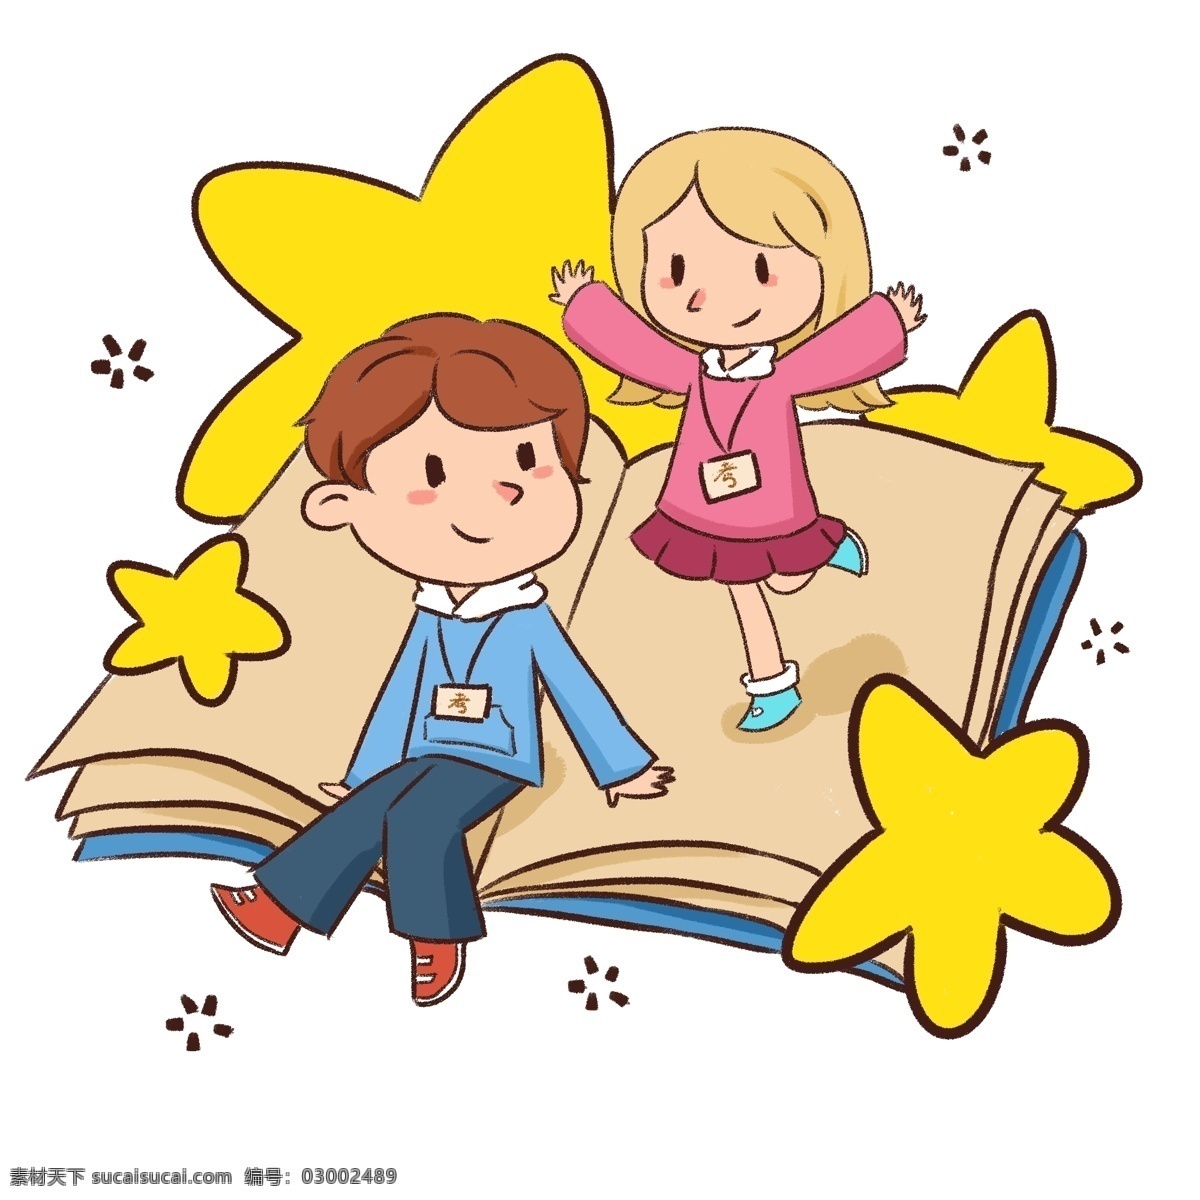 遨游 书海 卡通 可爱 小学生 插画 快乐学习 开心学习 男孩 女孩 开心 学习 坐在 书上 学习的小女孩